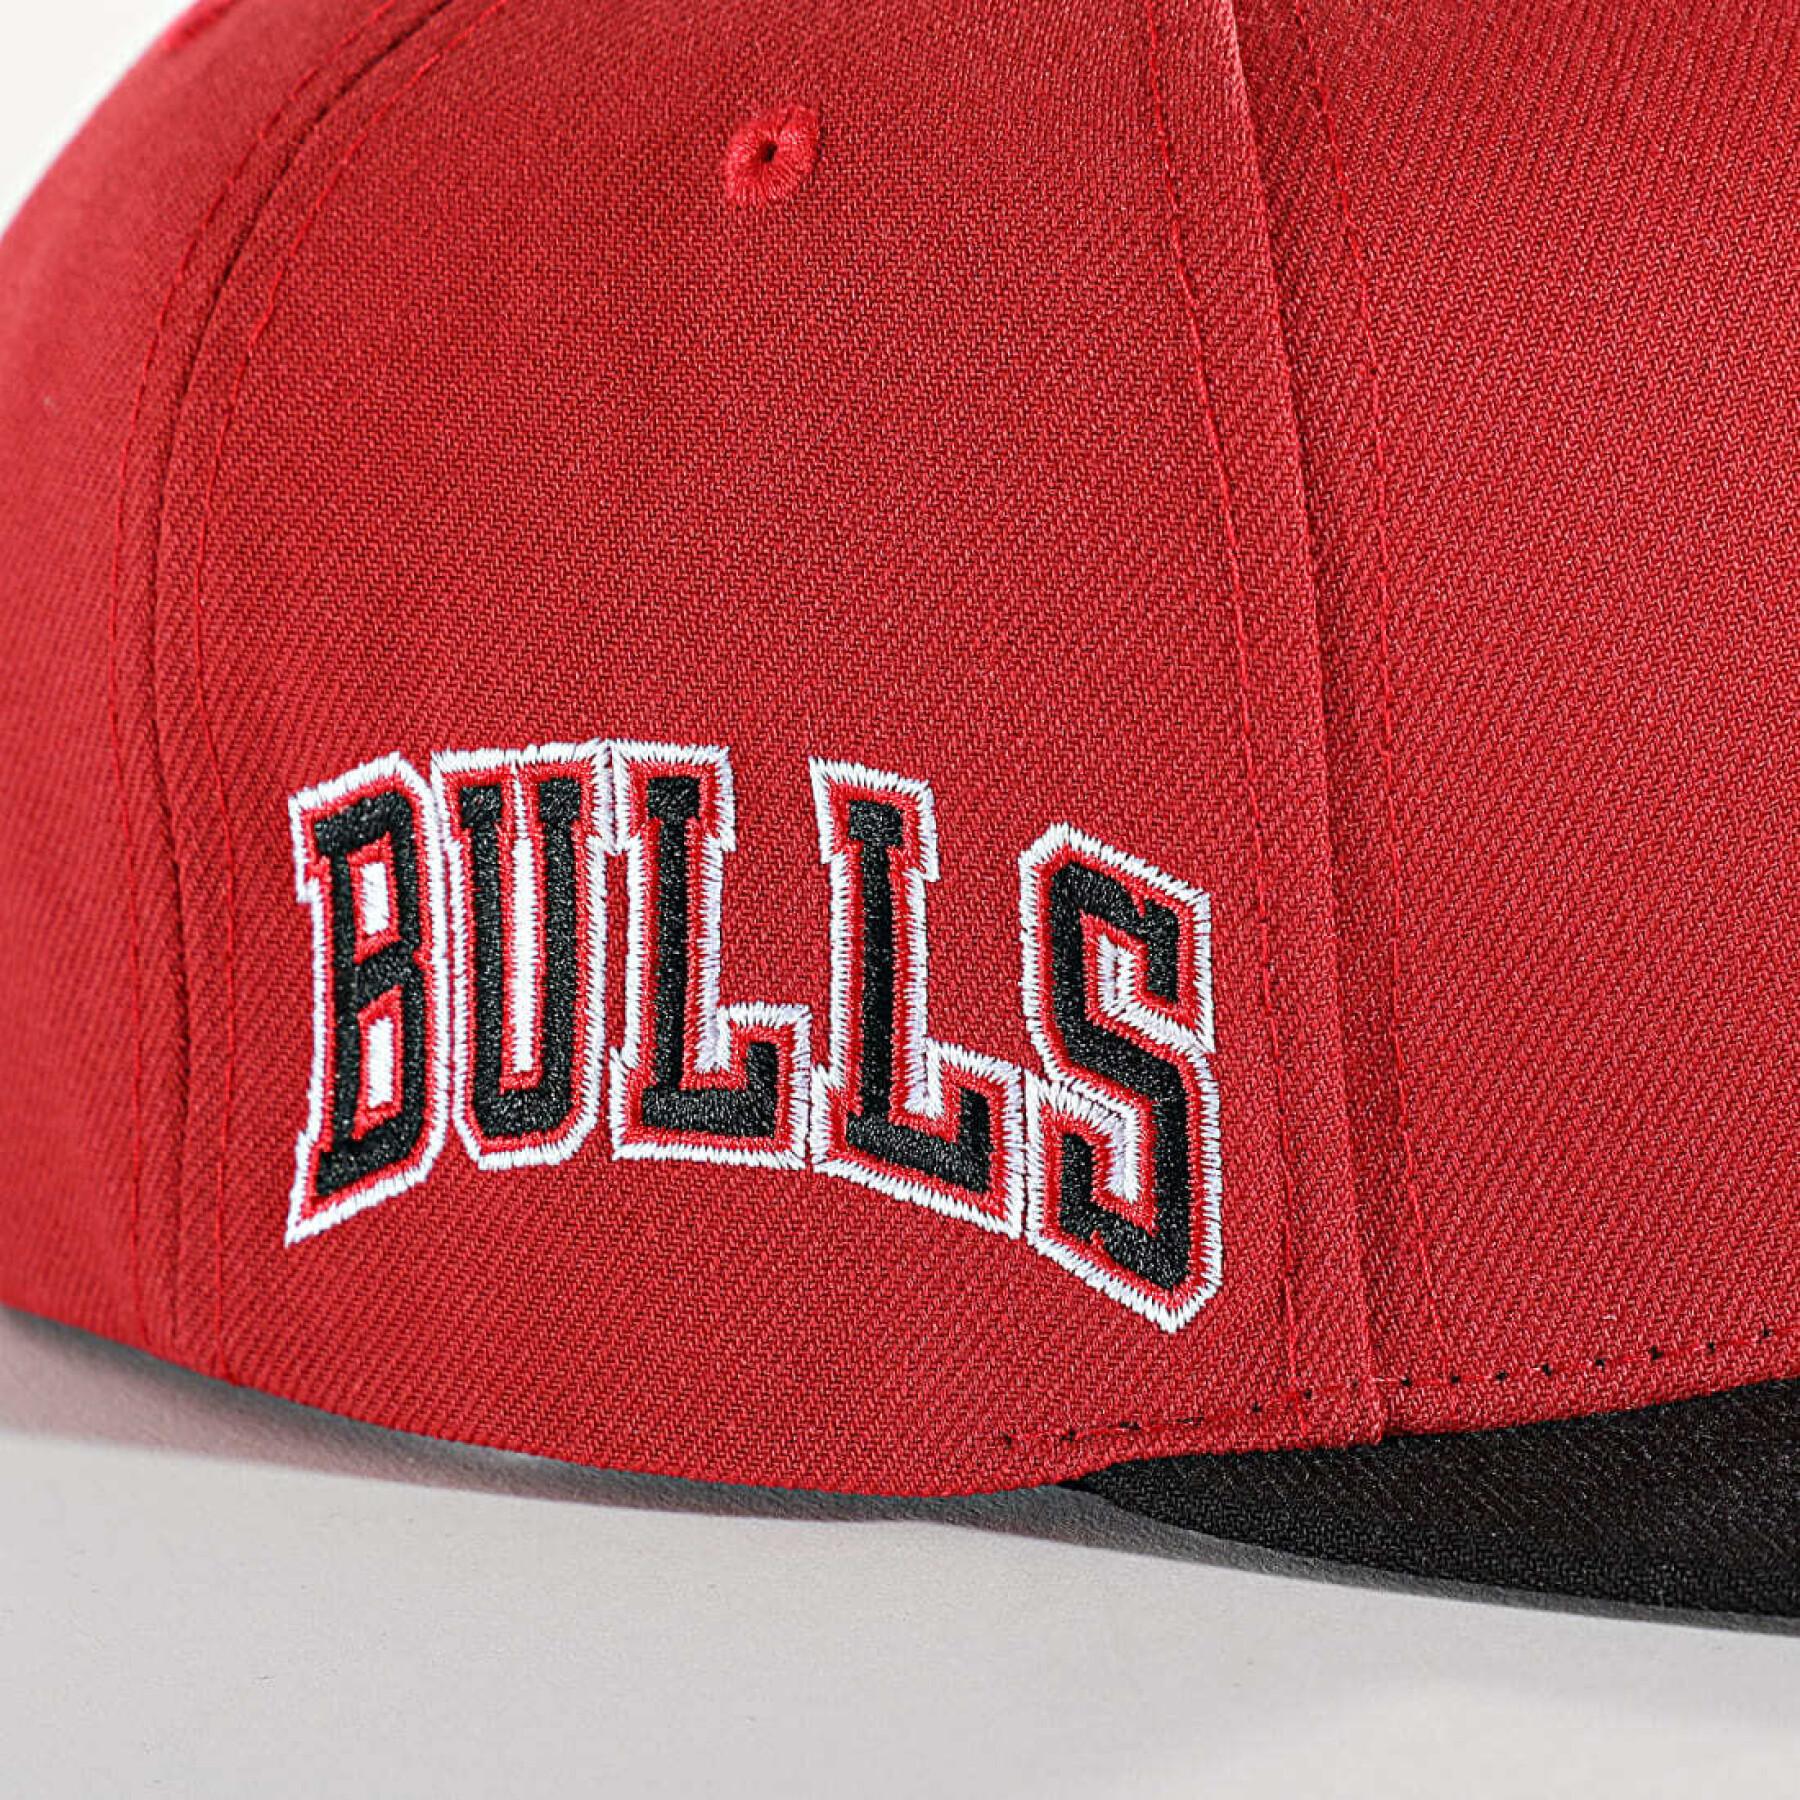 Kappe Chicago Bulls NBA Core Side